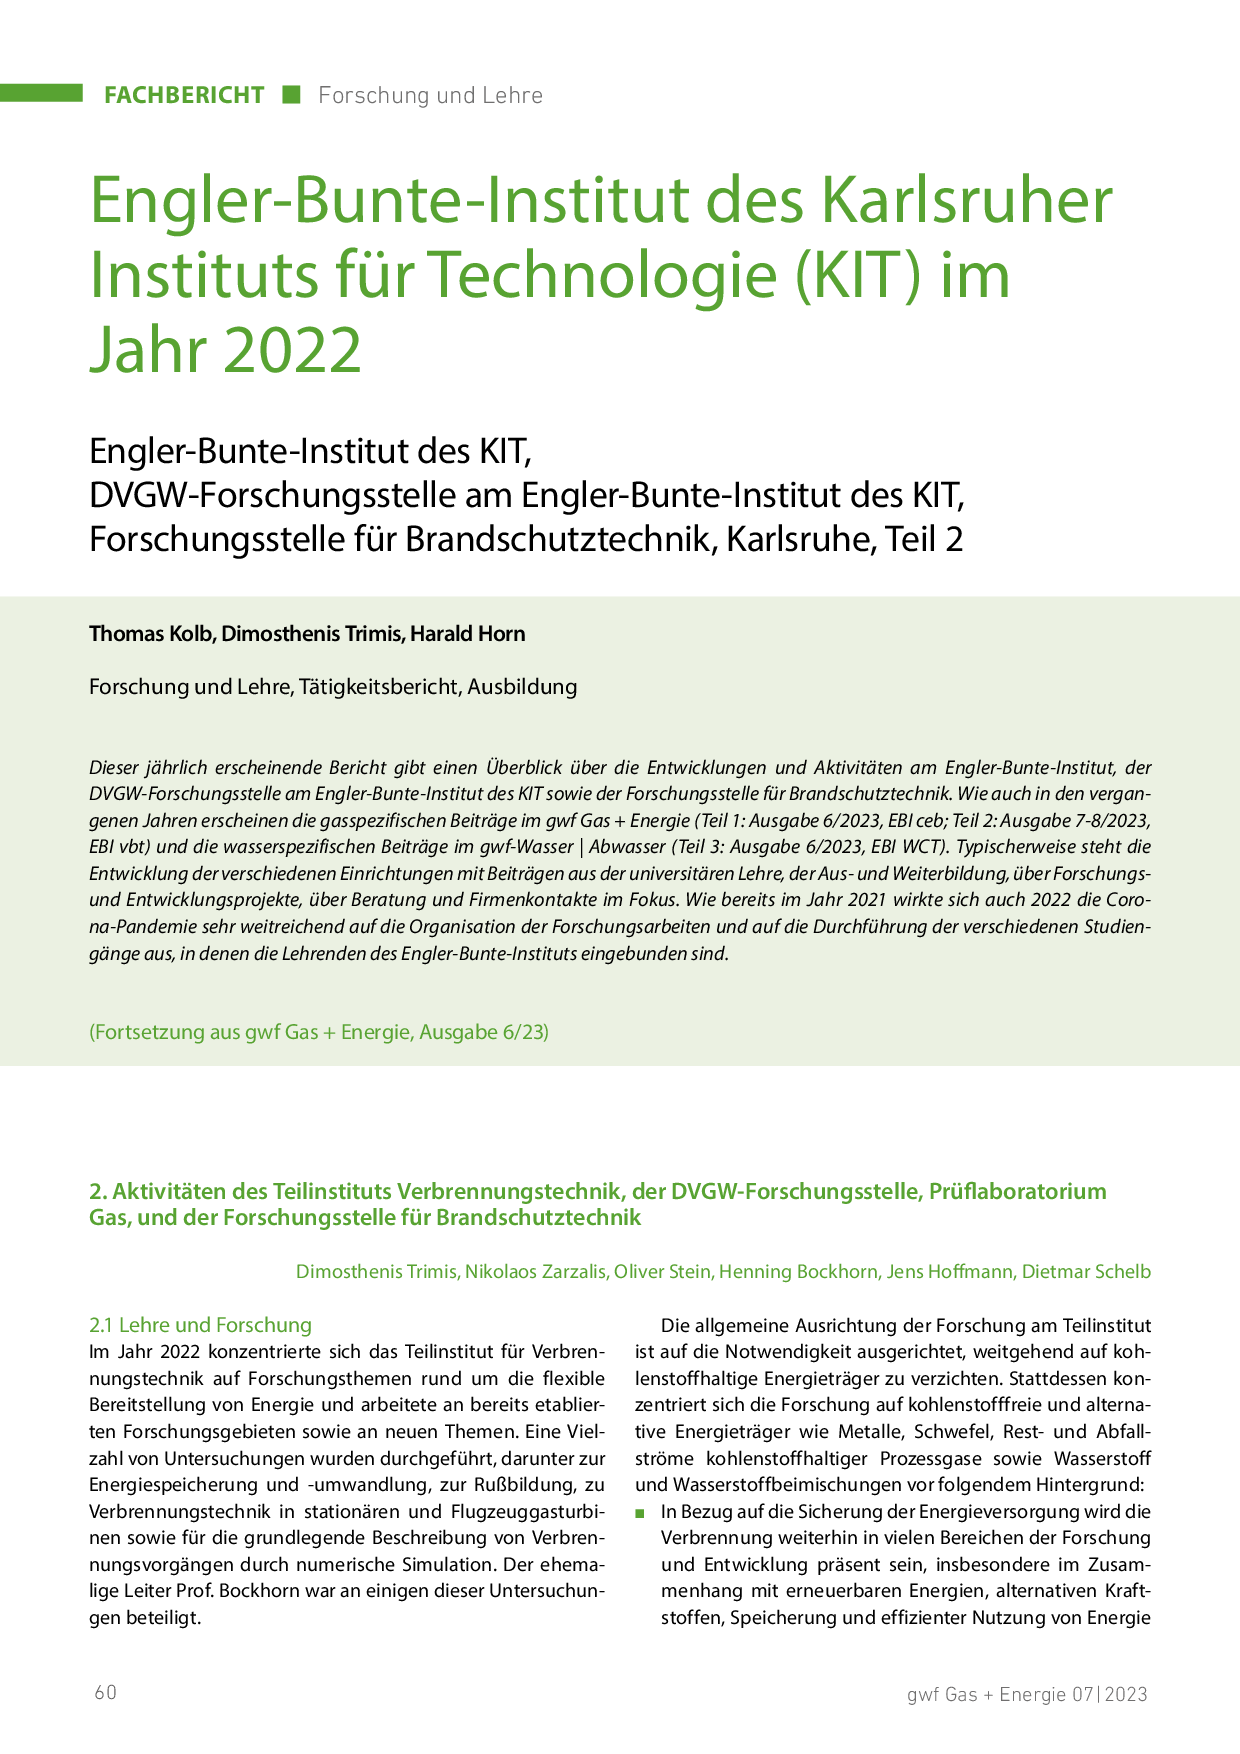 Engler-Bunte-Institut des Karlsruher Instituts für Technologie (KIT) im Jahr 2020